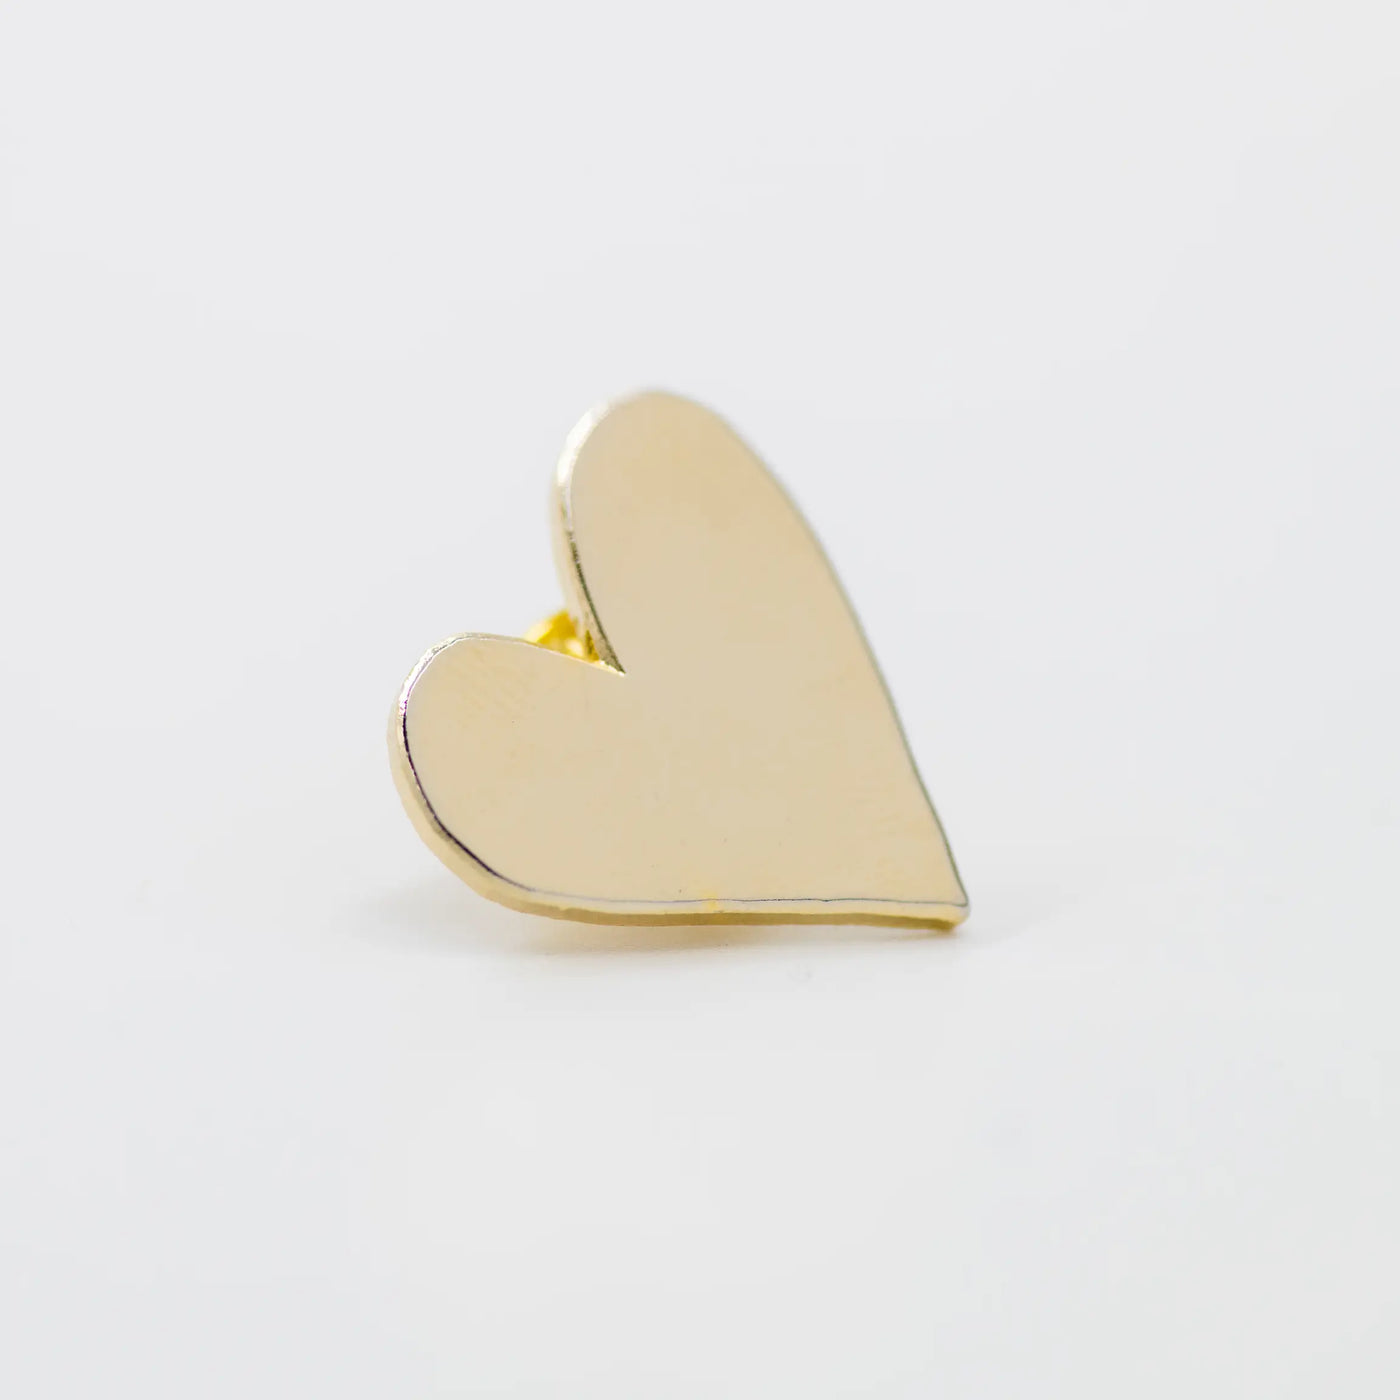 Gold heart enamel pin